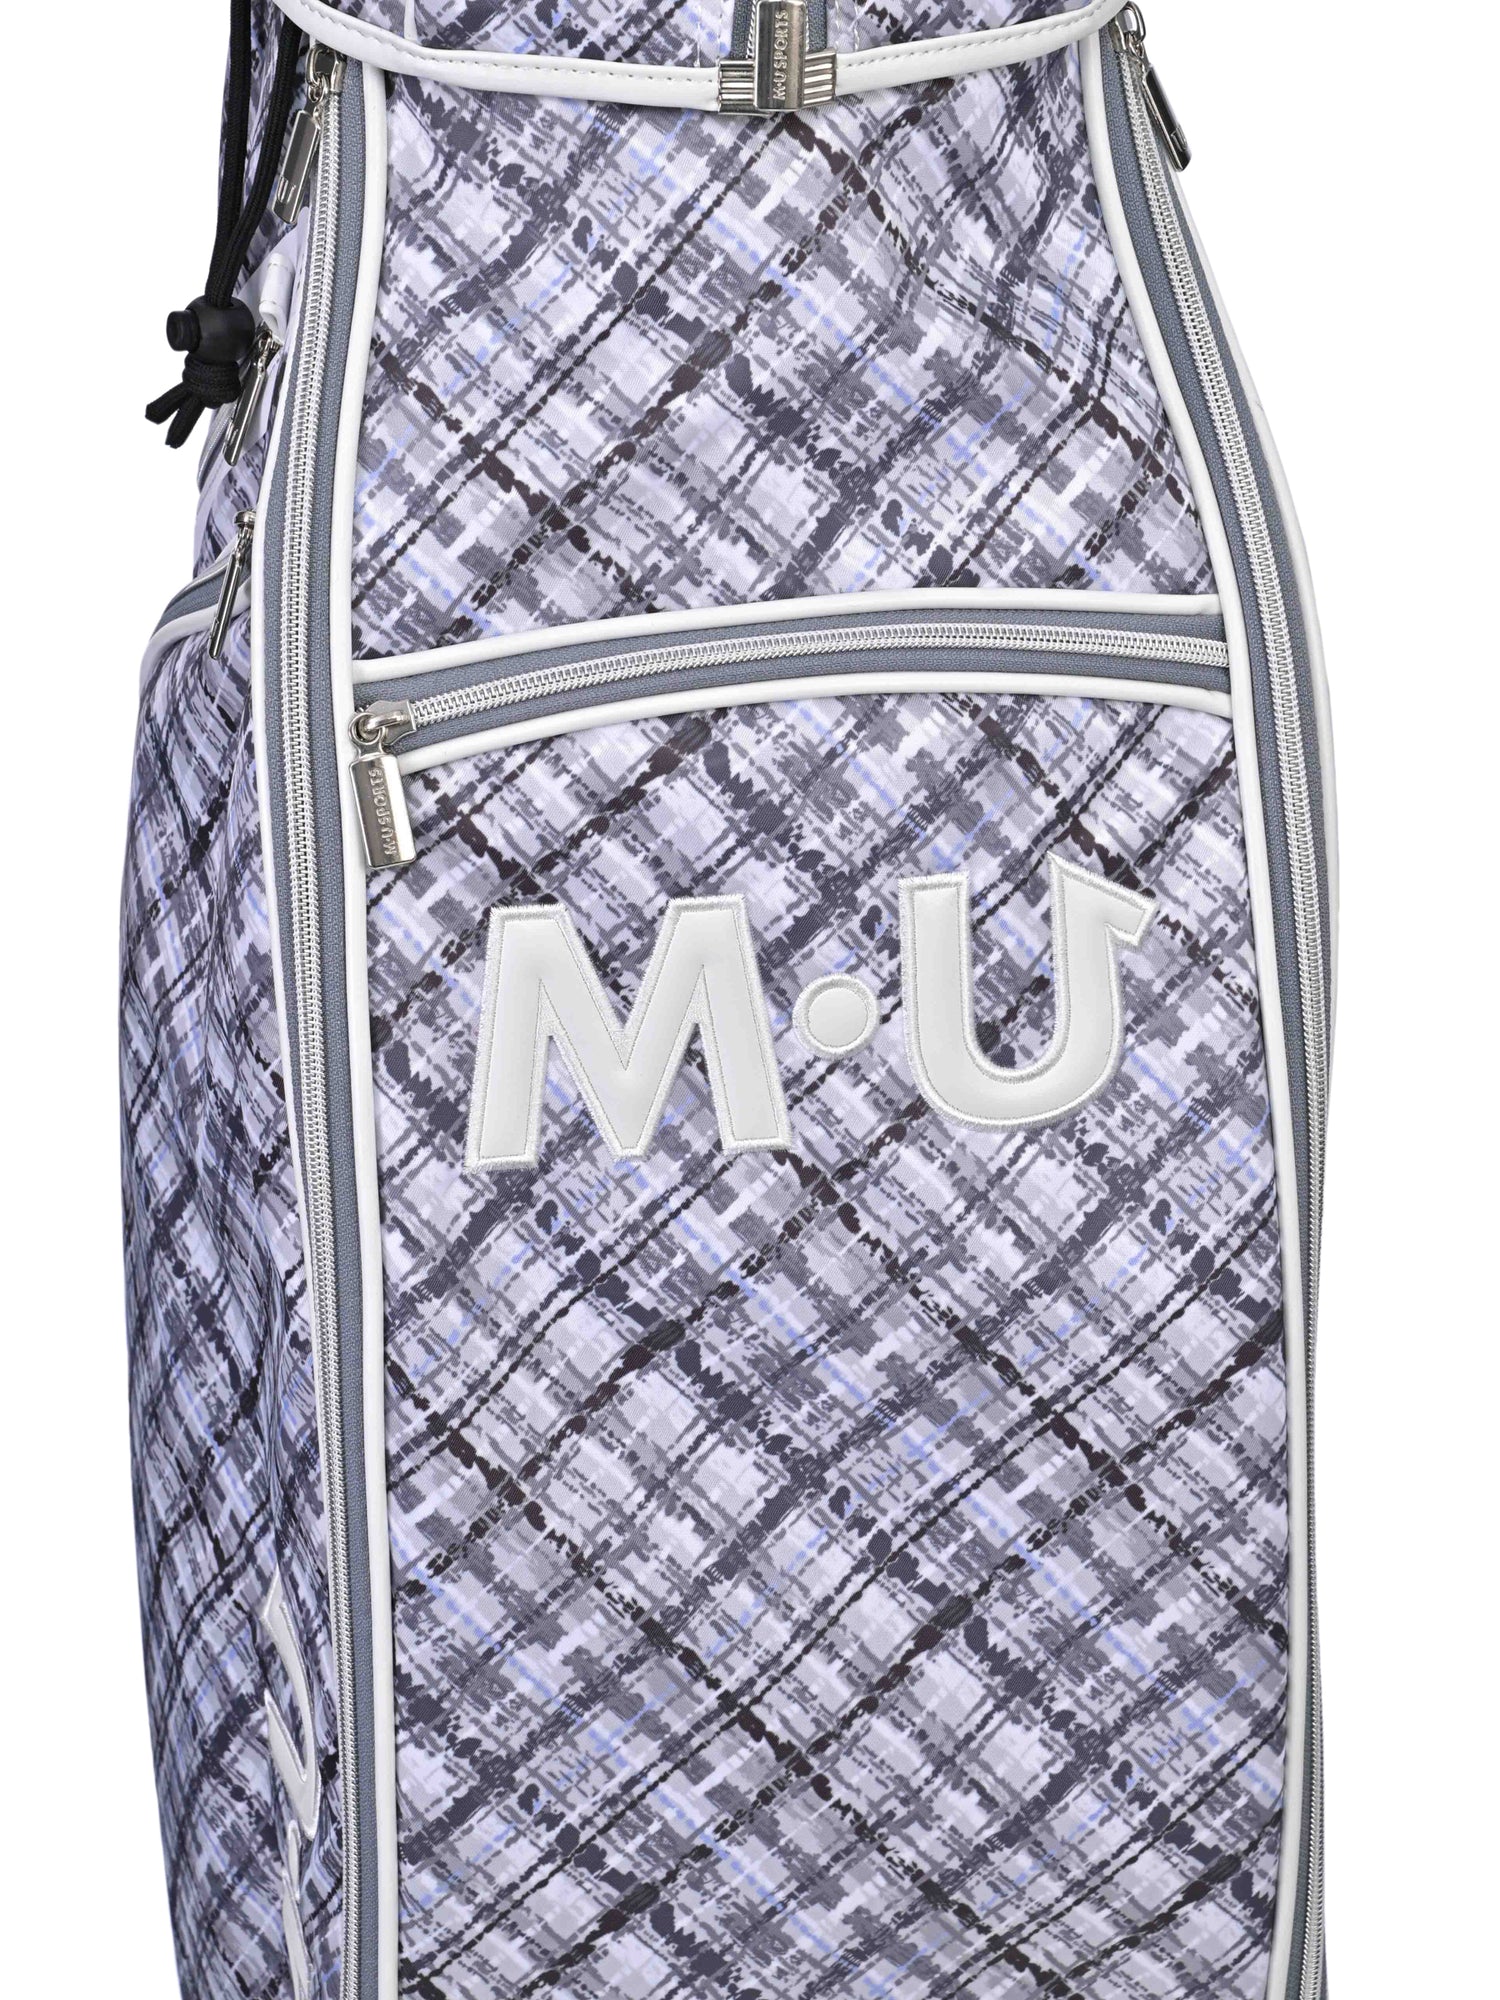 Multi-bias plaid caddy bag (703J6104)